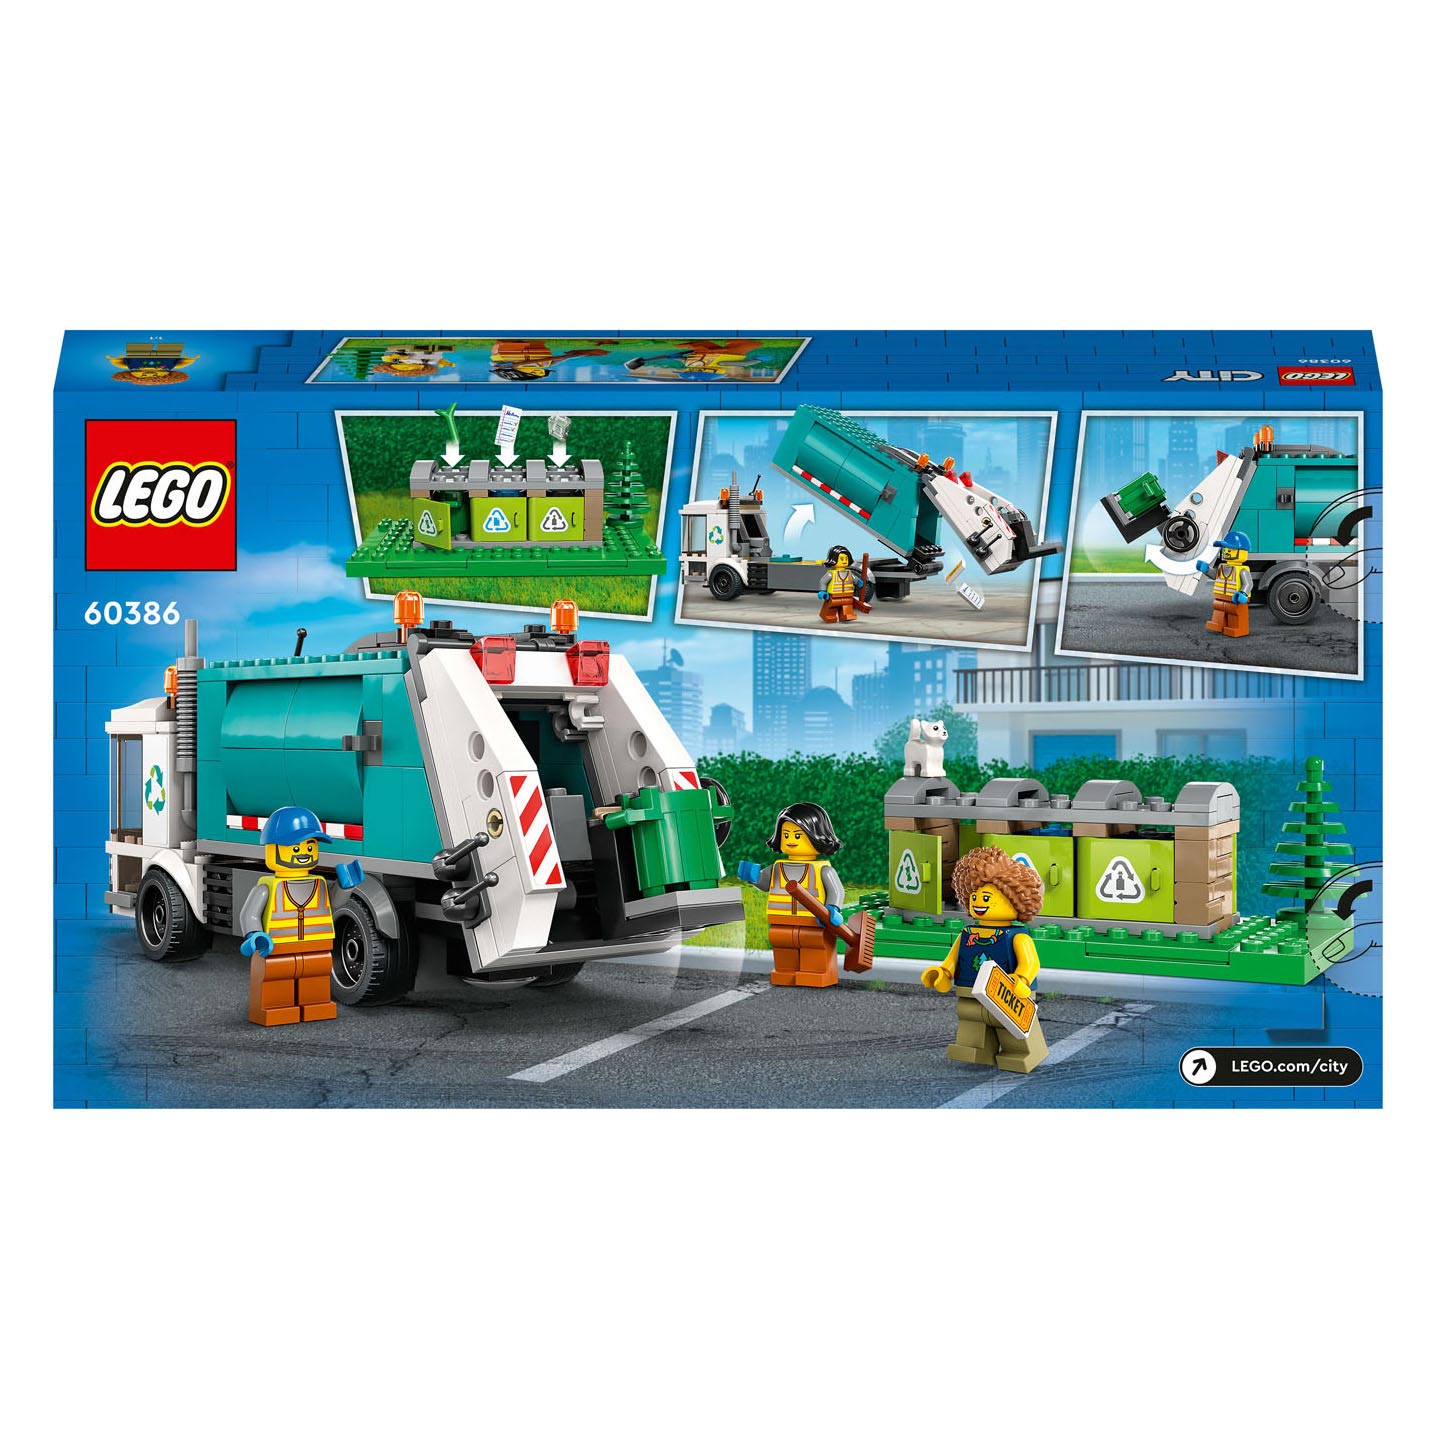 LEGO City 60386 Recycle Crachtwagen